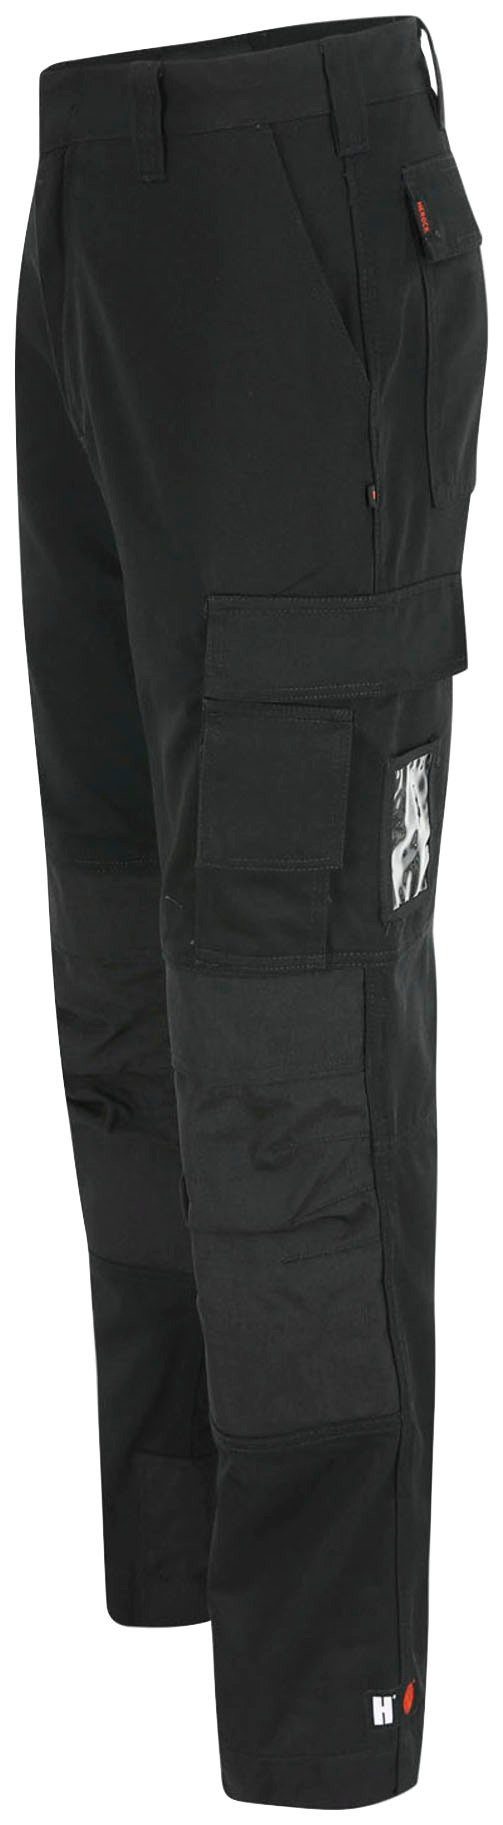 Herock Arbeitshose TITAN HOSE SHORTLEG schwarz angenehm Kurzgröβe, 12 3-Naht, wasserabweisend, Taschen, sehr